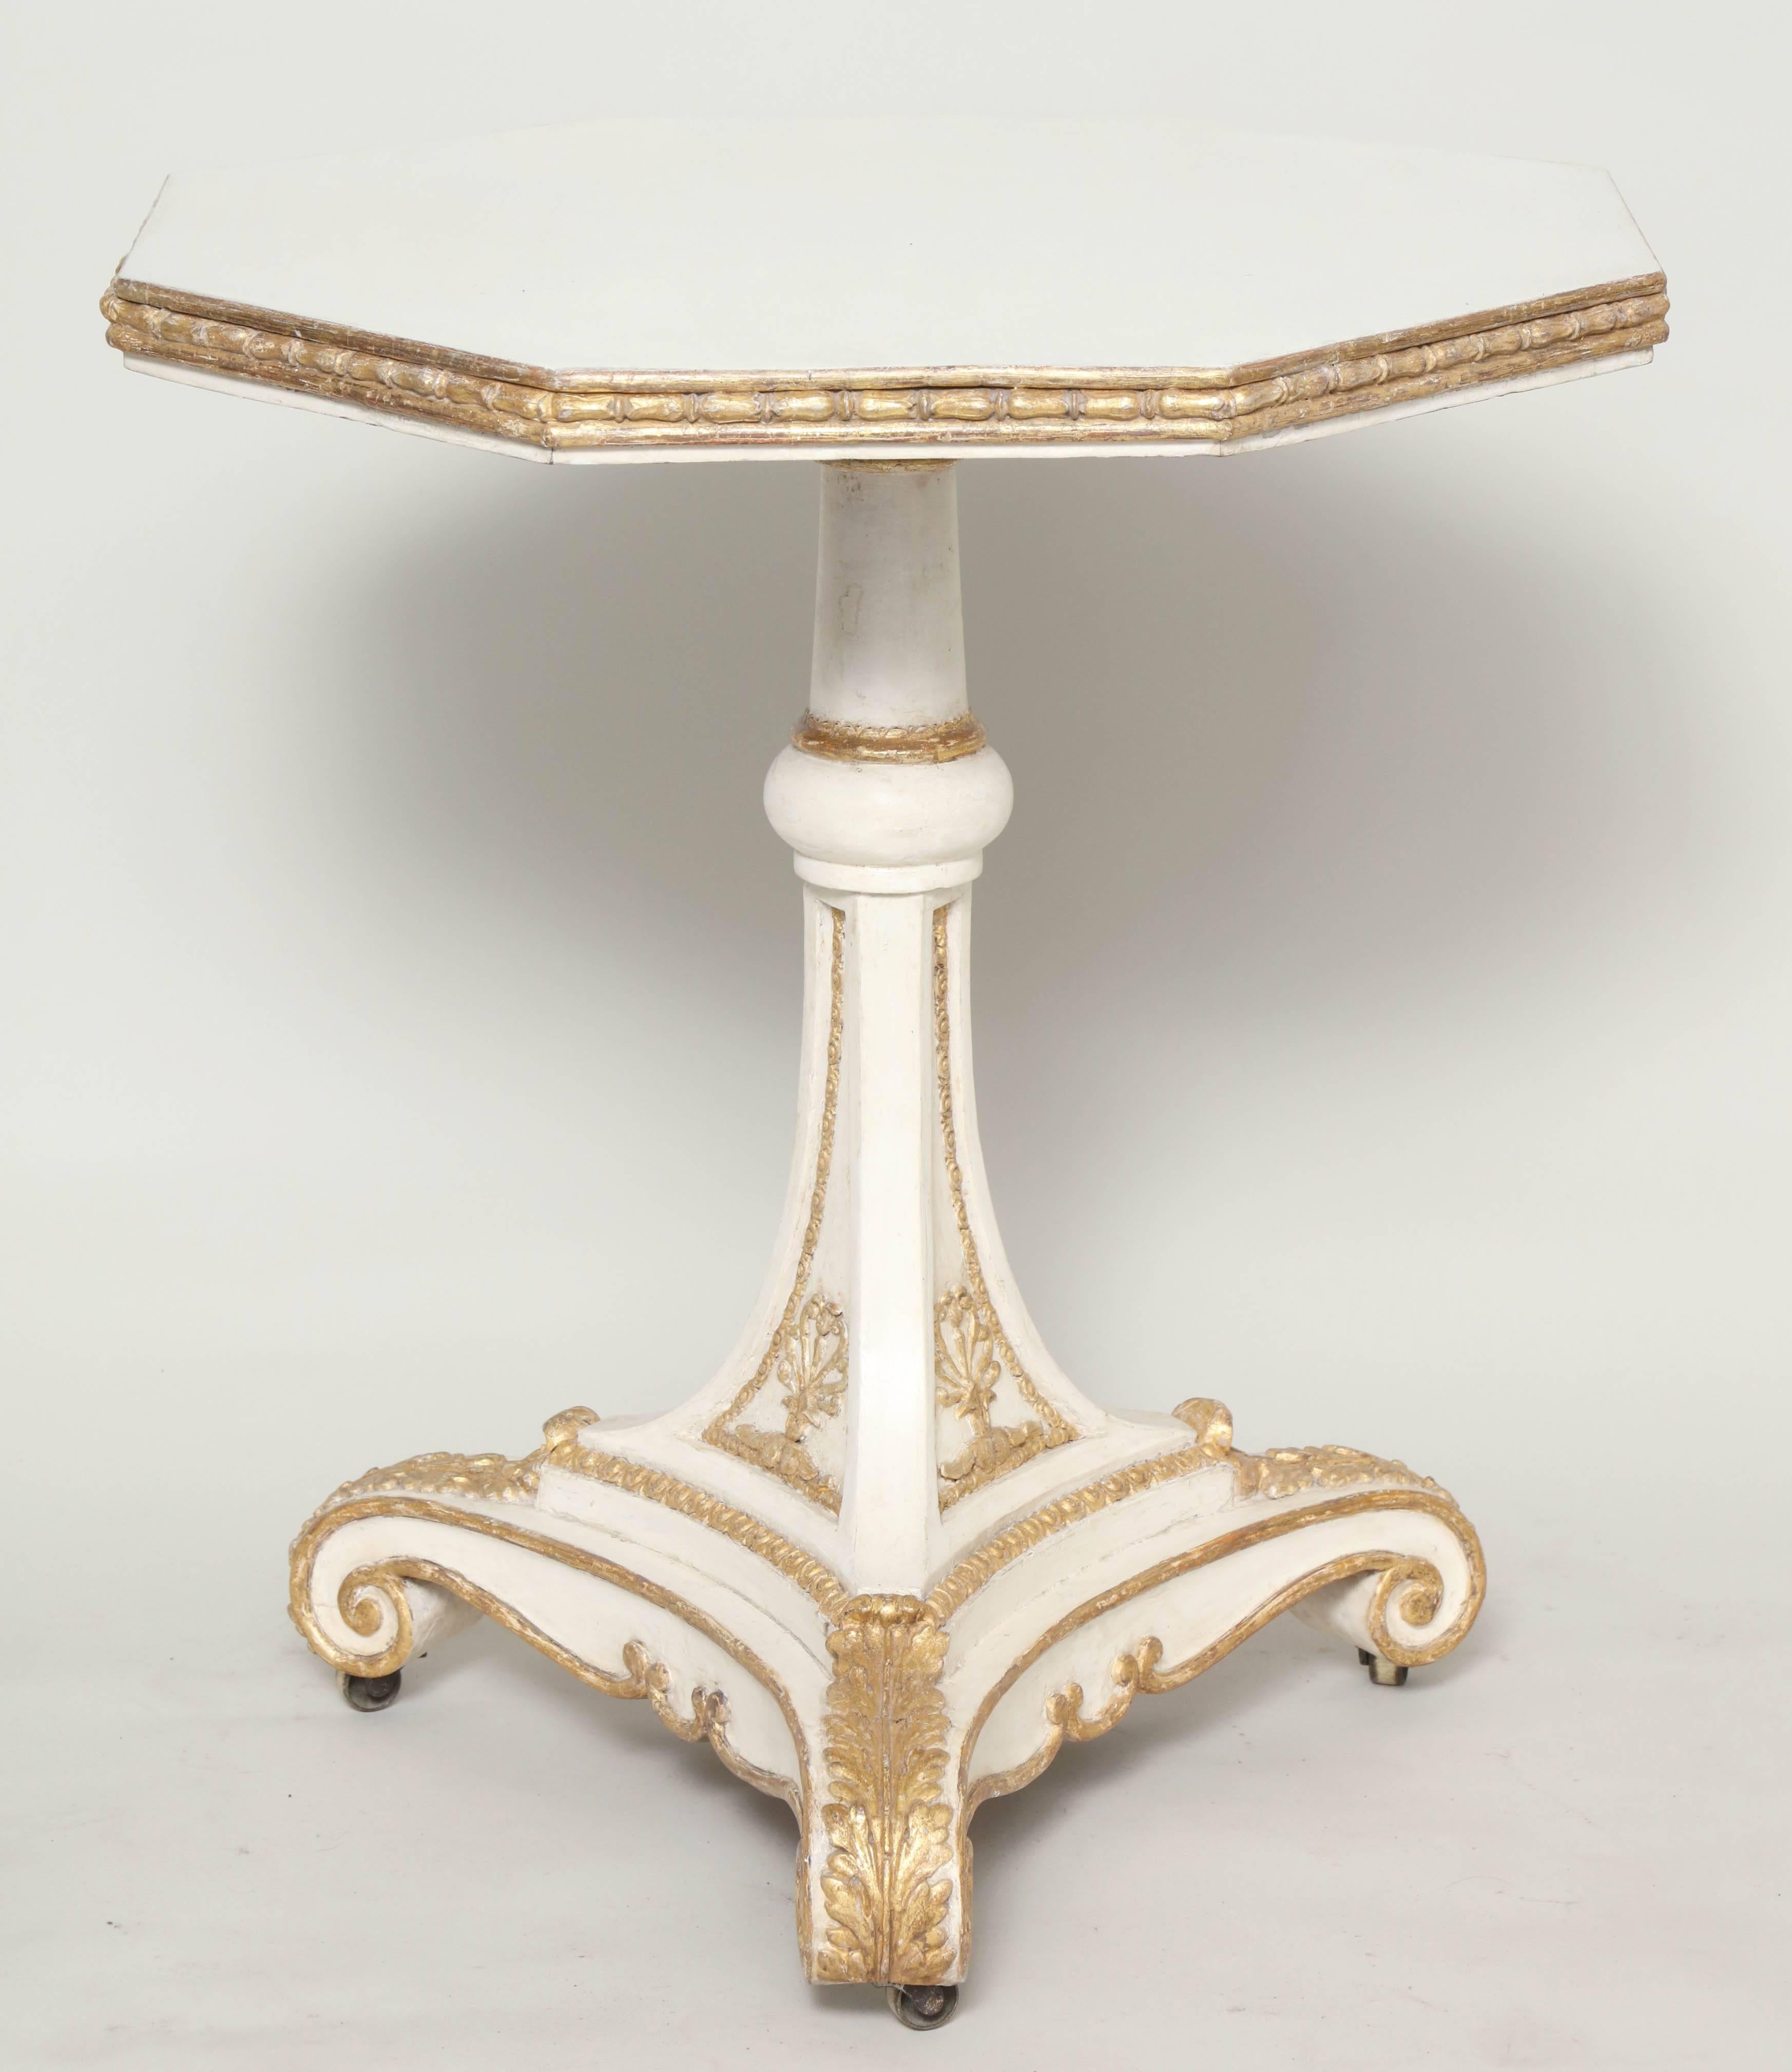 Magnifique table d'appoint avec une garniture dorée sur fond blanc, avec un plateau octogonal et une base sur piédestal avec roulettes, anglais, vers 1820.

 